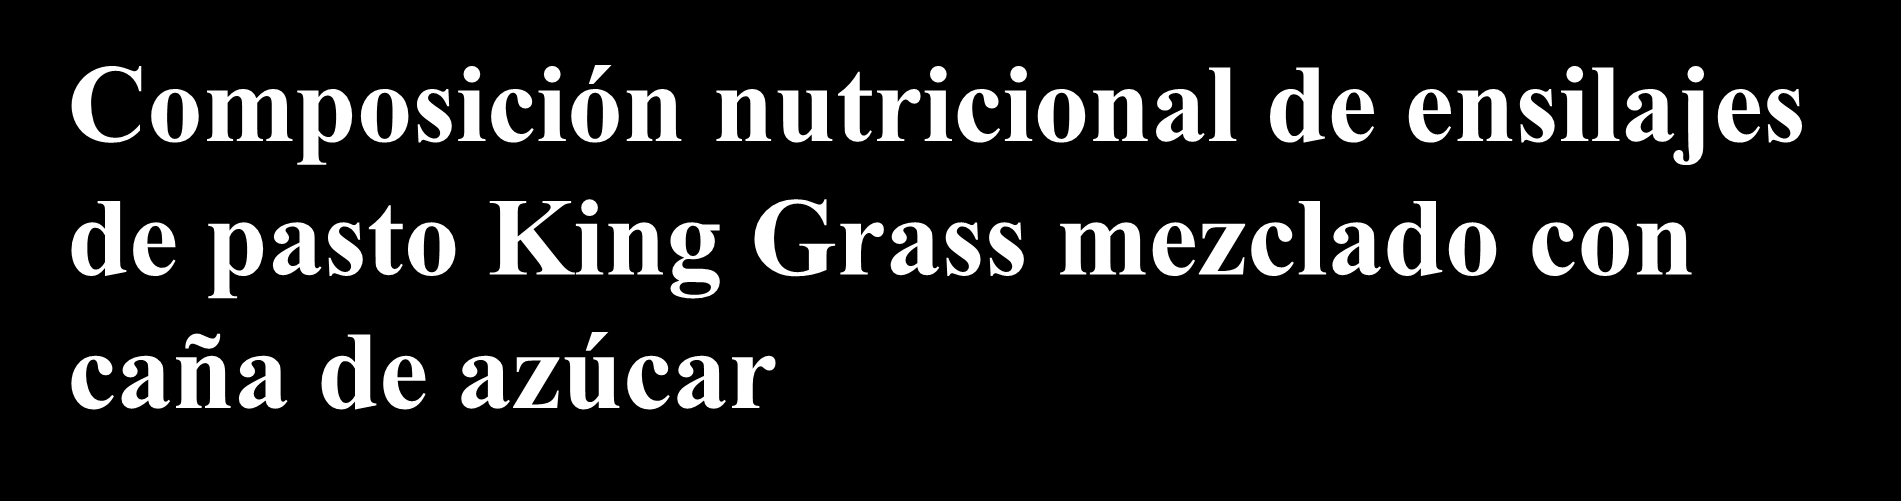 Composición nutricional de ensilajes de pasto King Grass mezclado con caña de azúcar Porcentaje de caña de azúcar Parámetro 15 30 45 60 Materia seca